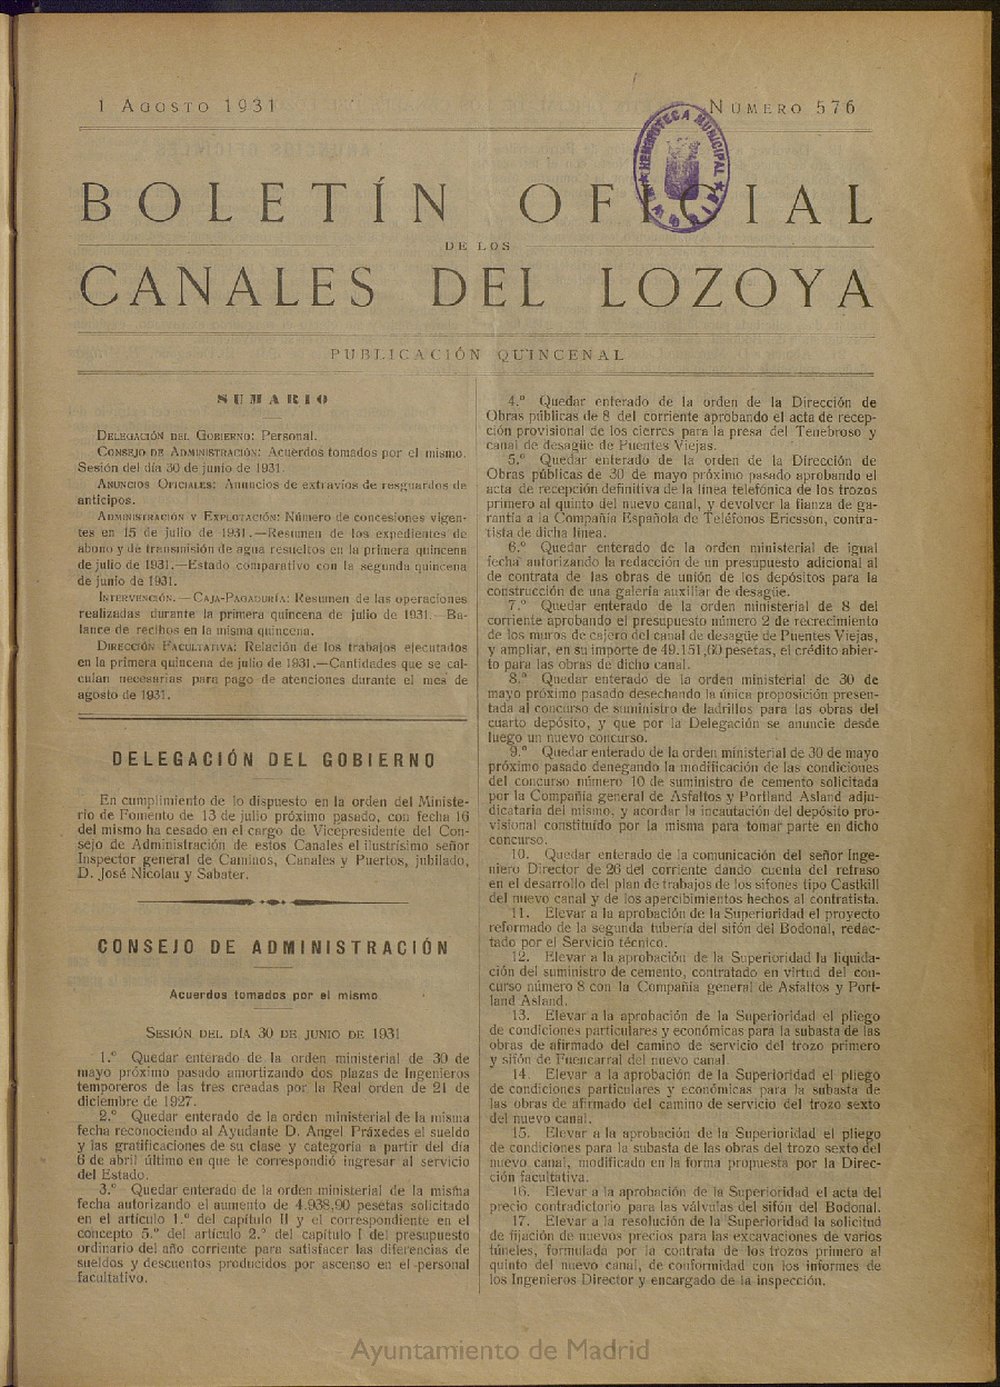 Boletín Oficial de los Canales del Lozoya del 1 de agosto de 1931, nº 576